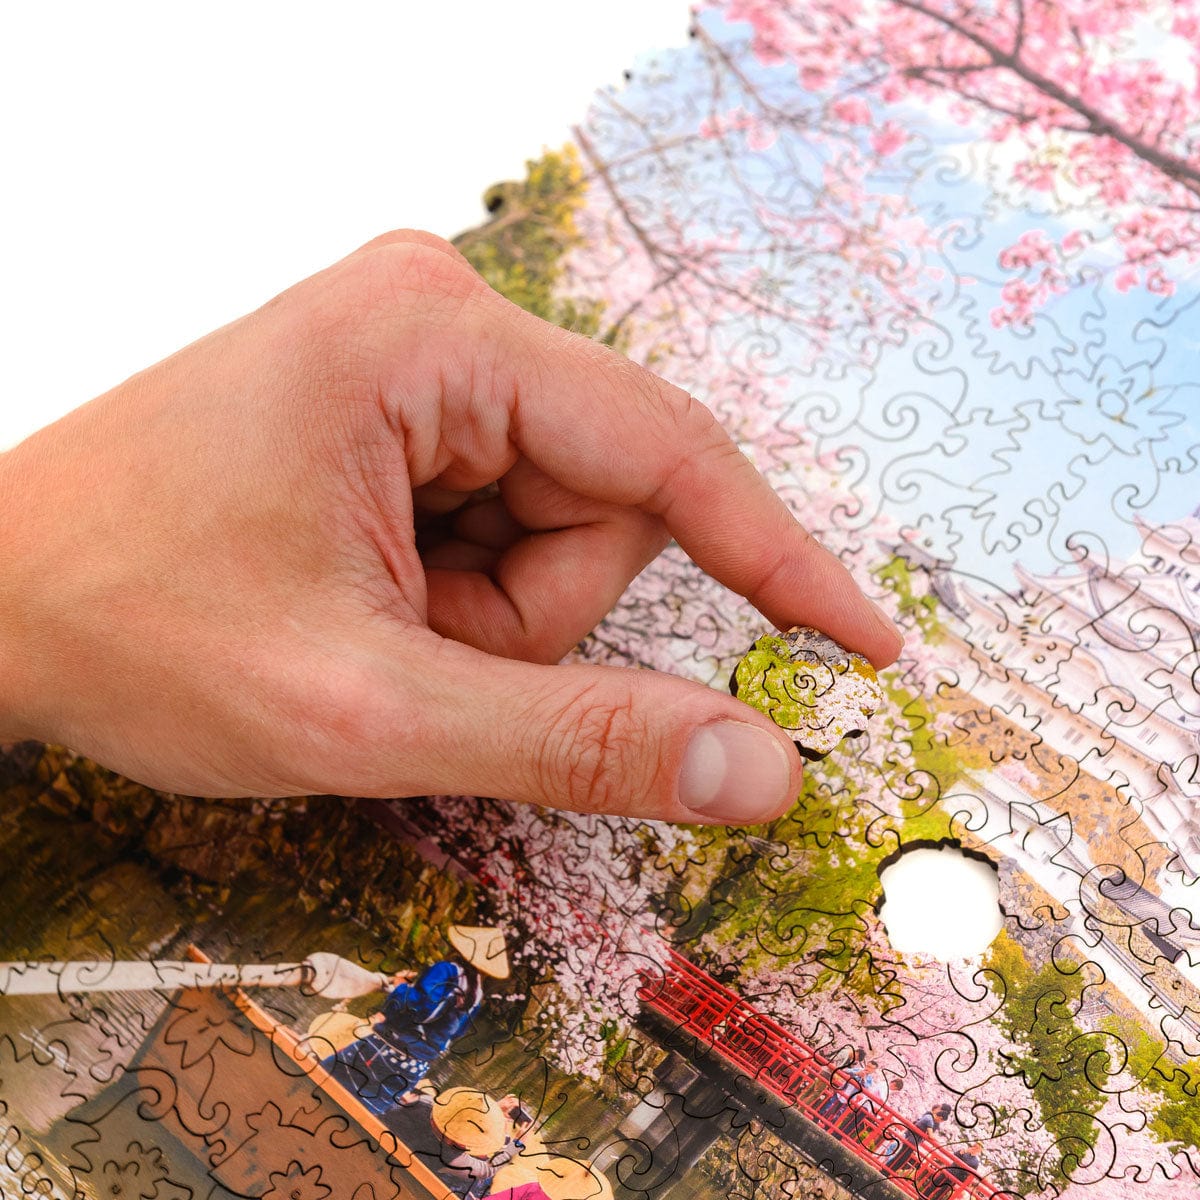 Unidragon Puzzle Size S Nature Gift Set #3 (Mountain, Sakura)